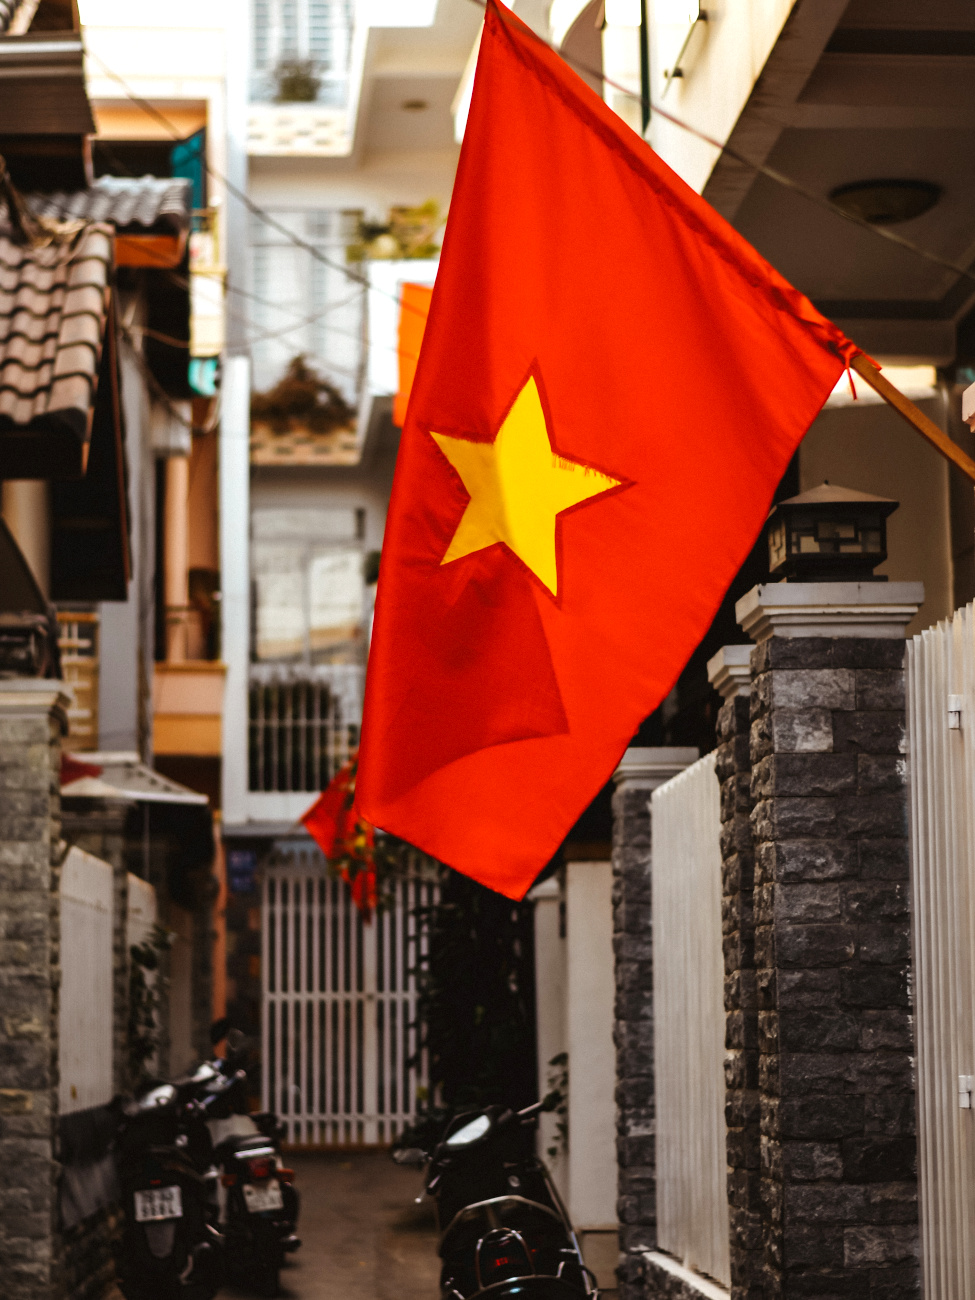 Вьетнамский флаг